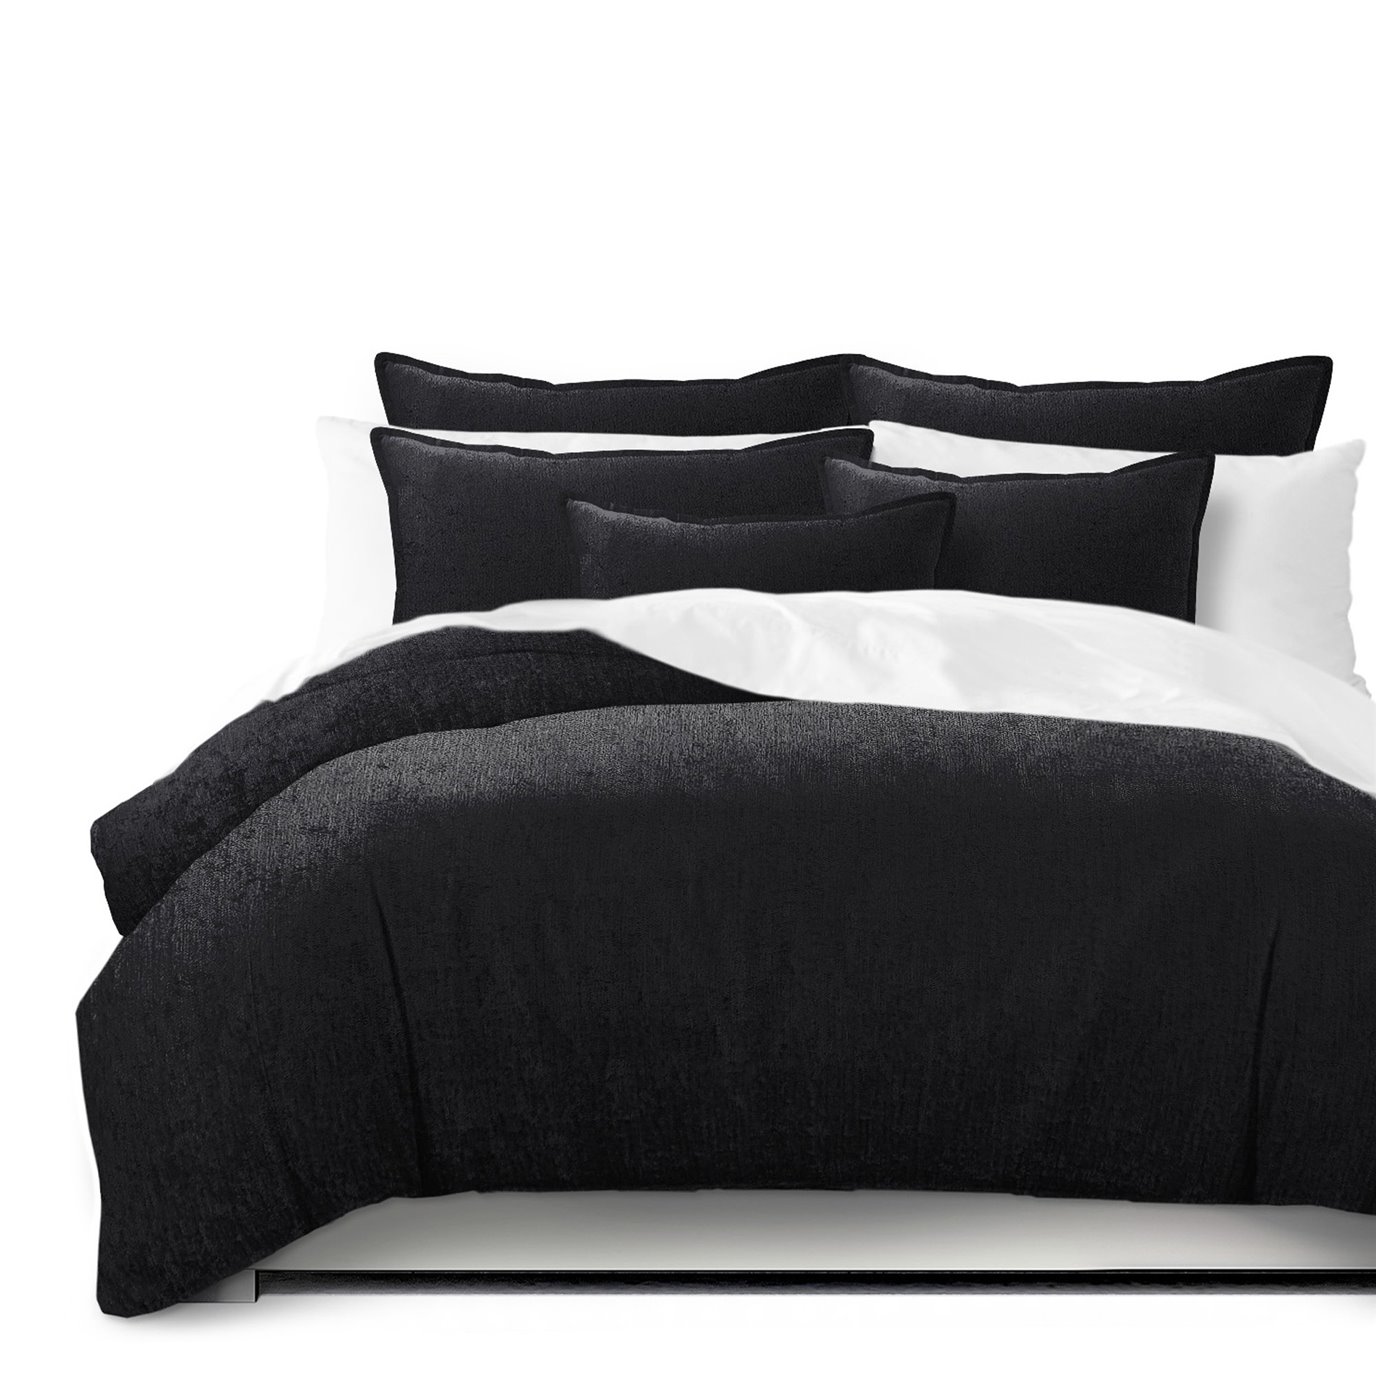 Juno Velvet Black Comforter and Pillow Sham(s) Set - Size Super King